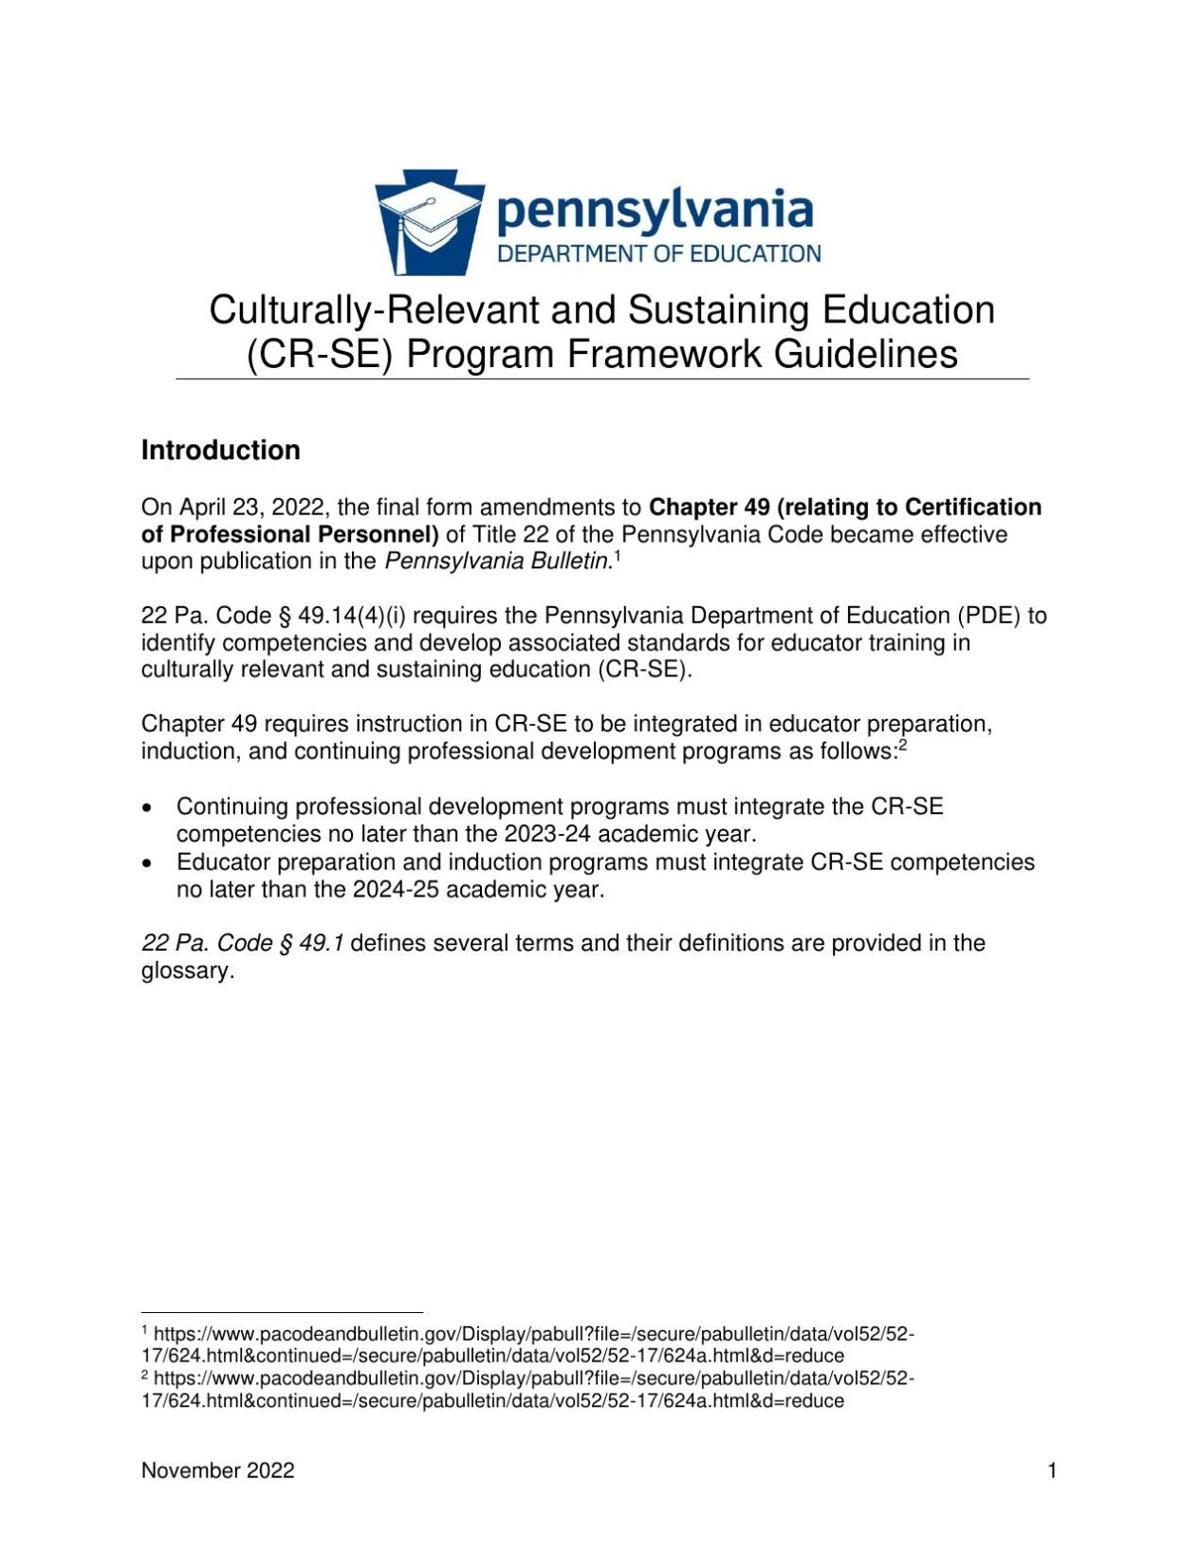 Pennsylvania Chapter 49 framework guidelines